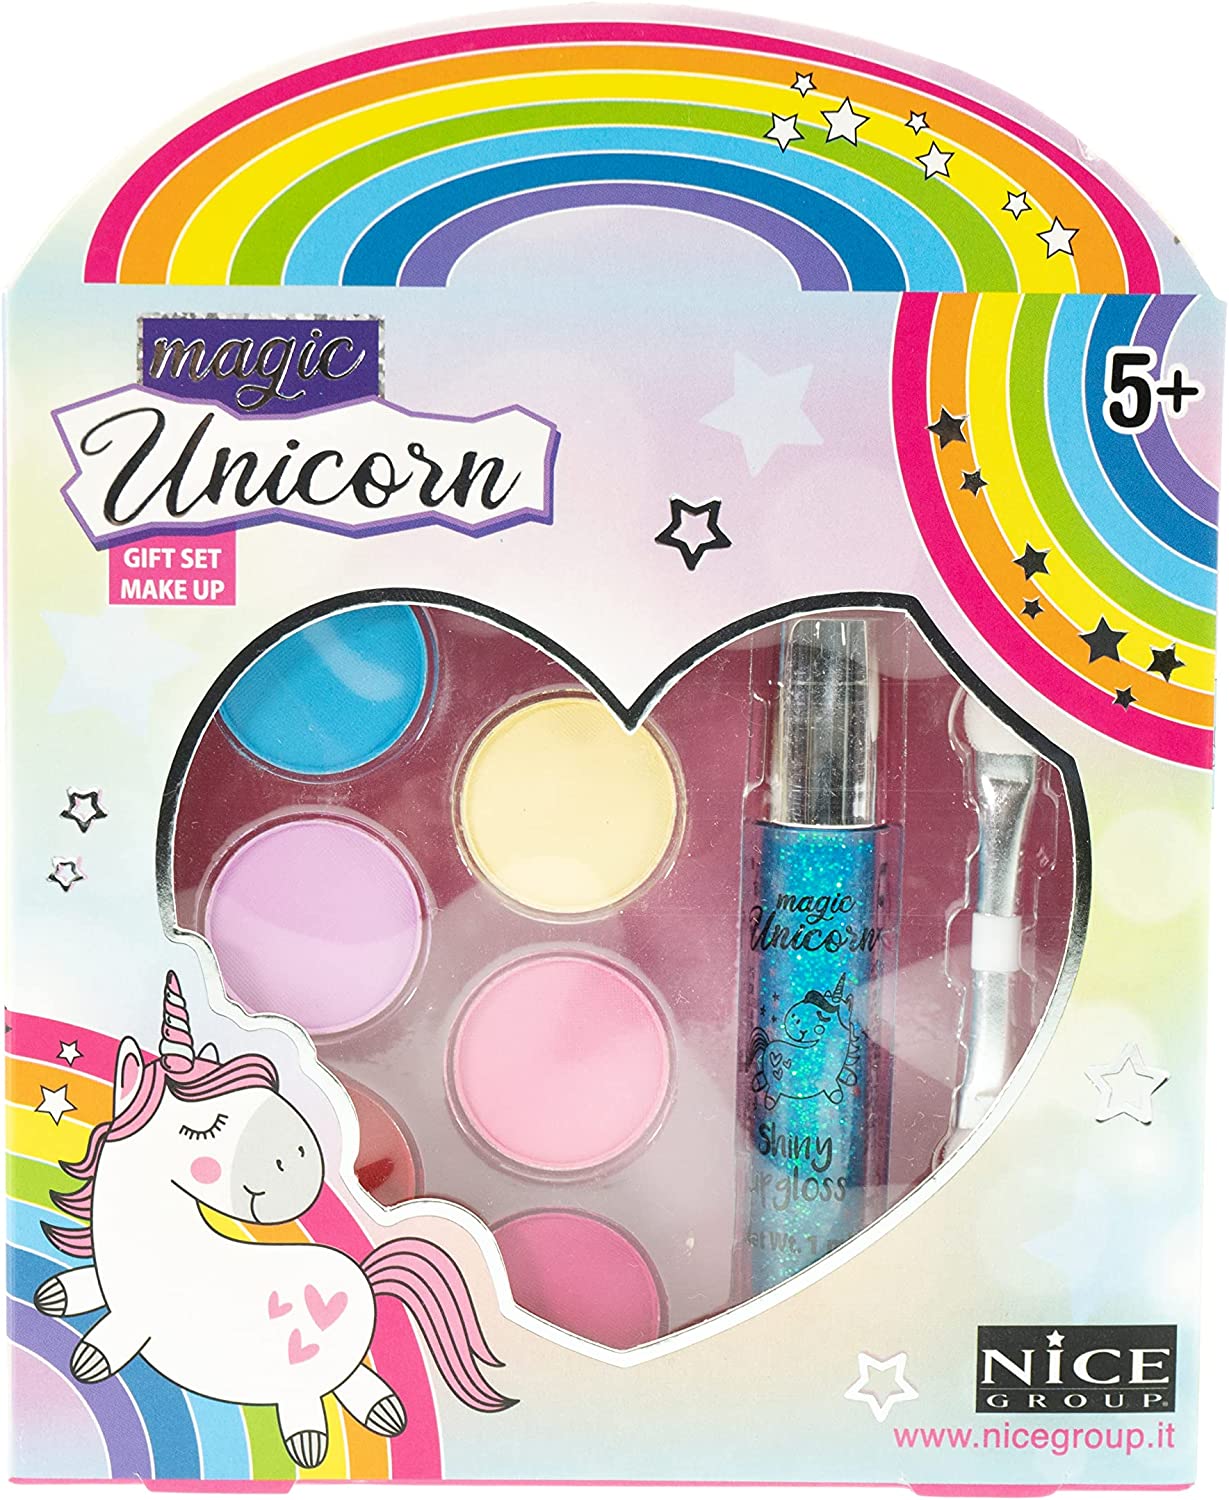 Nice Group - Magic Unicorn Gift Set, 1 Scatolina Make Up Stile Unicorno, 1 Kit  per Viso - NICE16006